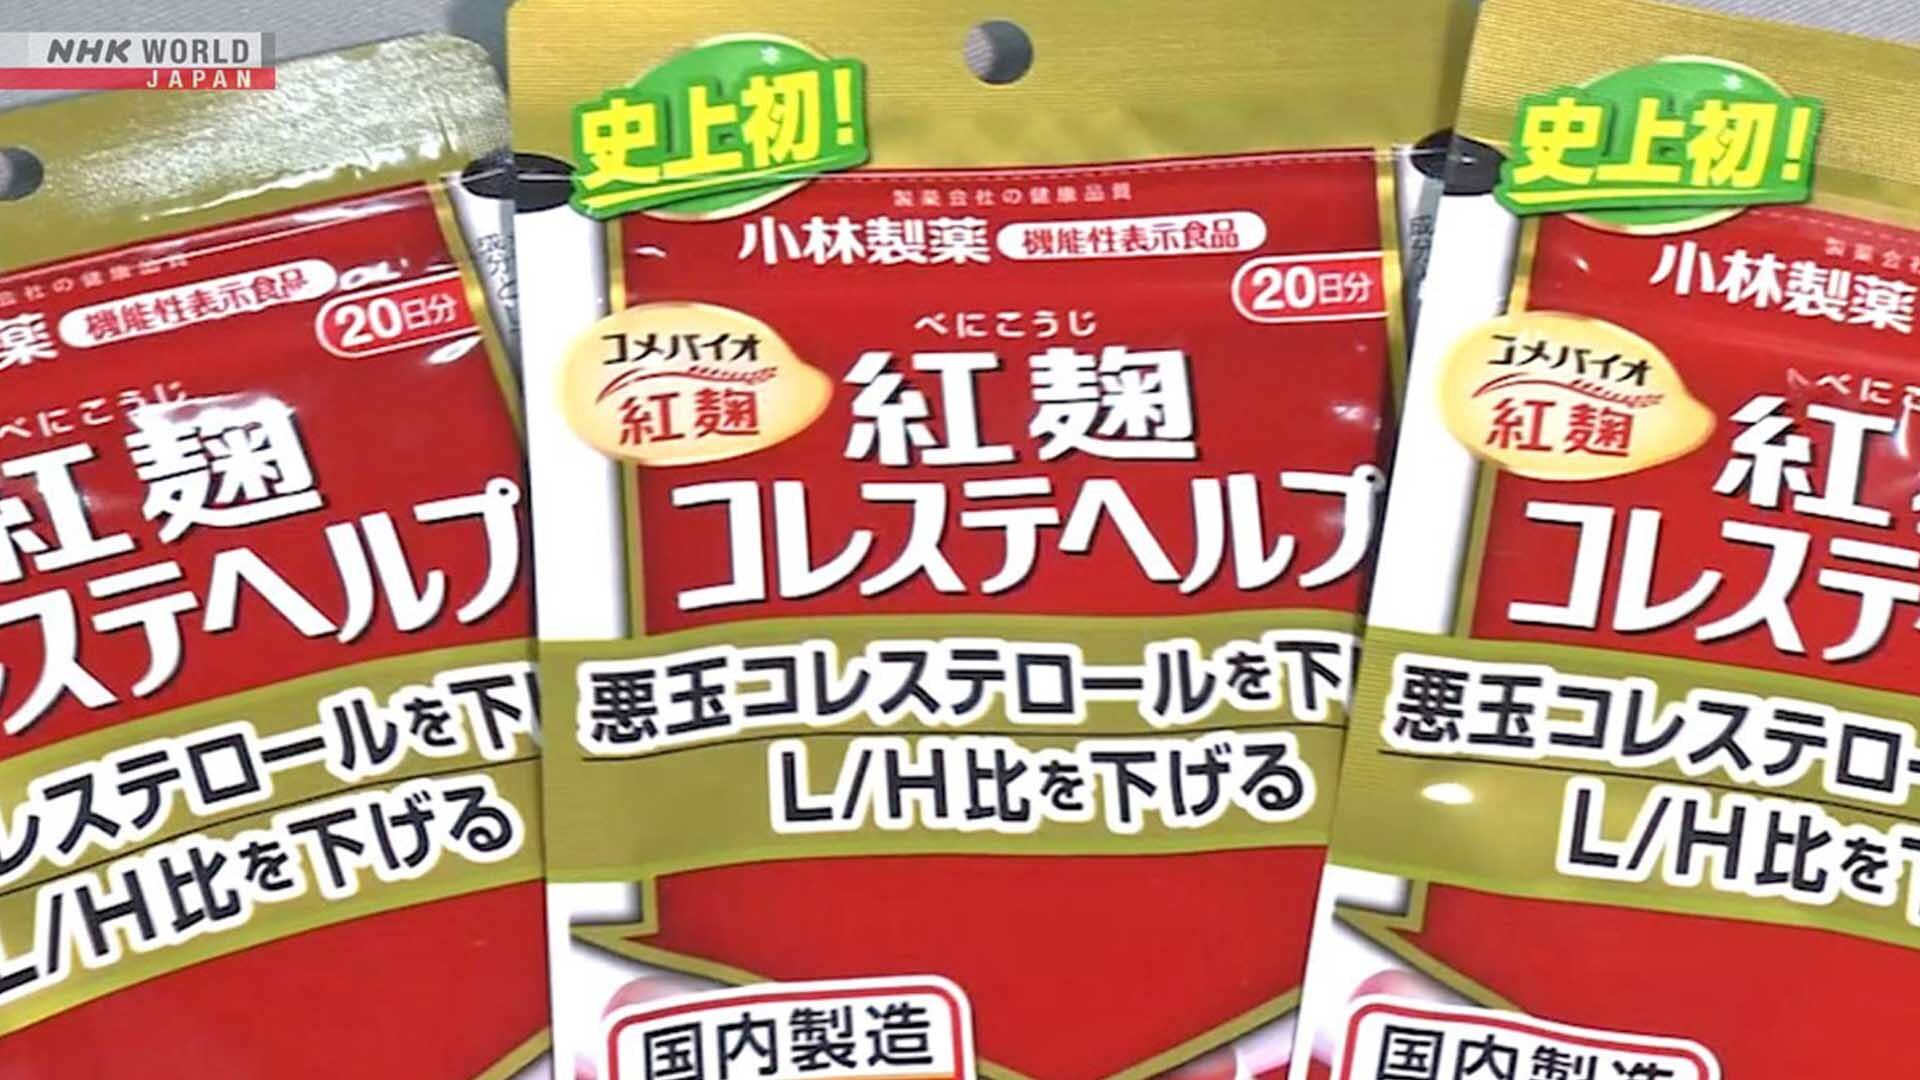 ญี่ปุ่นผวาเหยื่ออาหารเสริม “ข้าวยีสต์แดง” พุ่ง 4 ศพ-หลายบริษัทเรียกคืนสินค้า